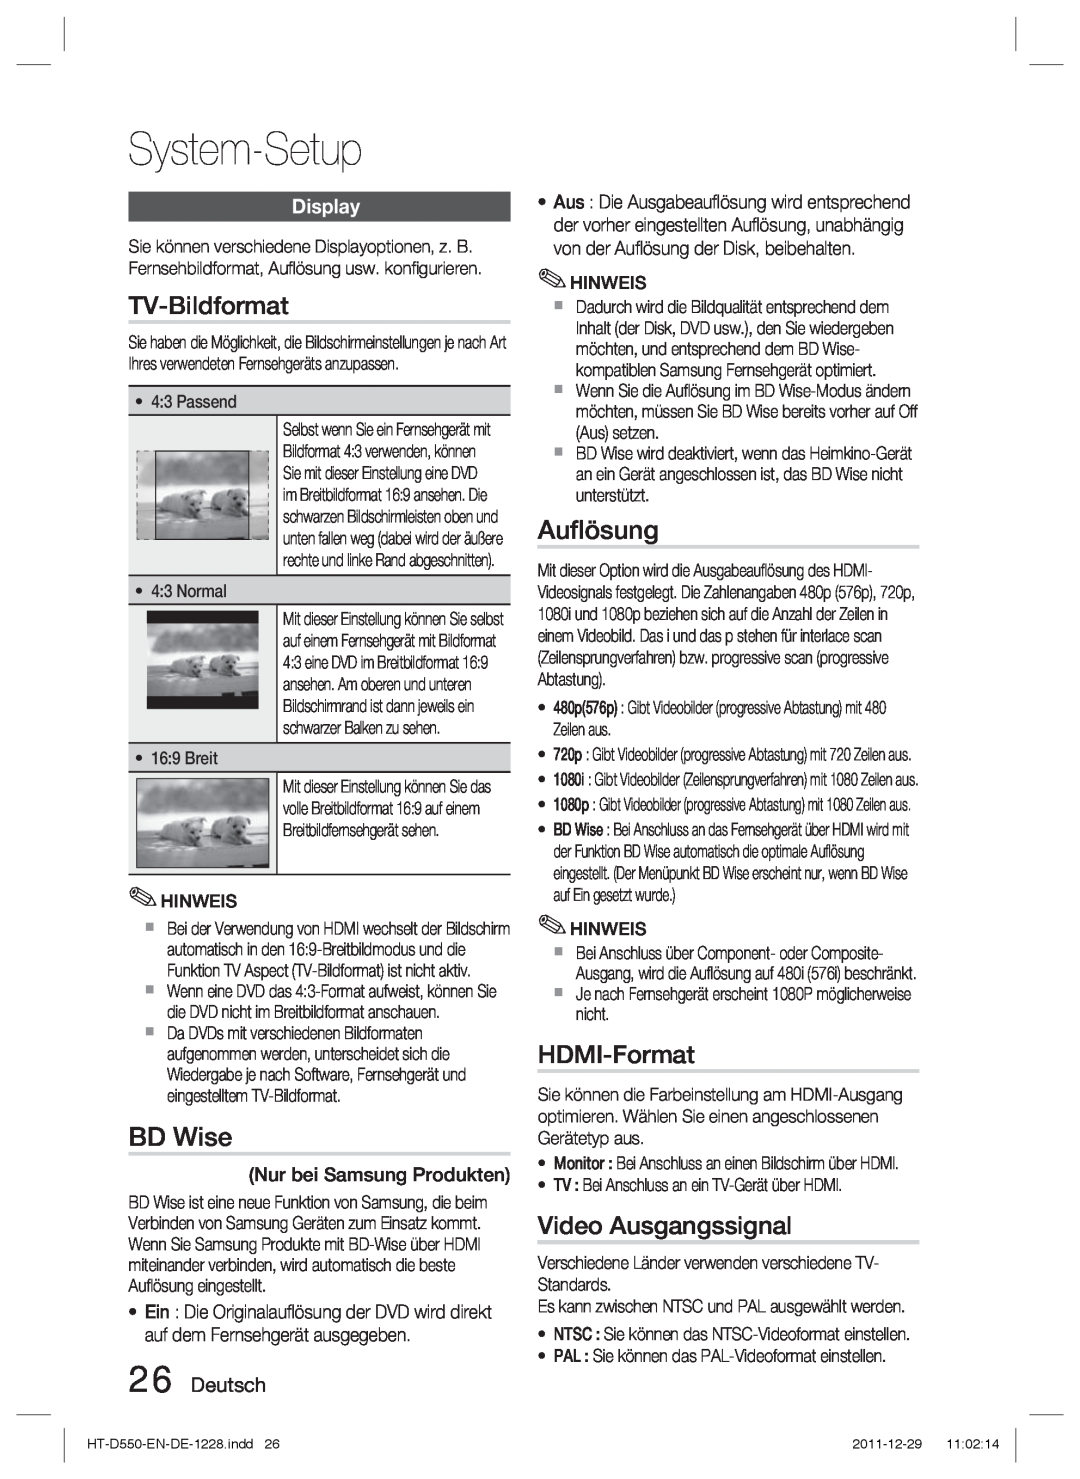 Samsung HT-D555/ZF TV-Bildformat, Auﬂösung, HDMI-Format, Video Ausgangssignal, Deutsch, System-Setup, BD Wise, Display 